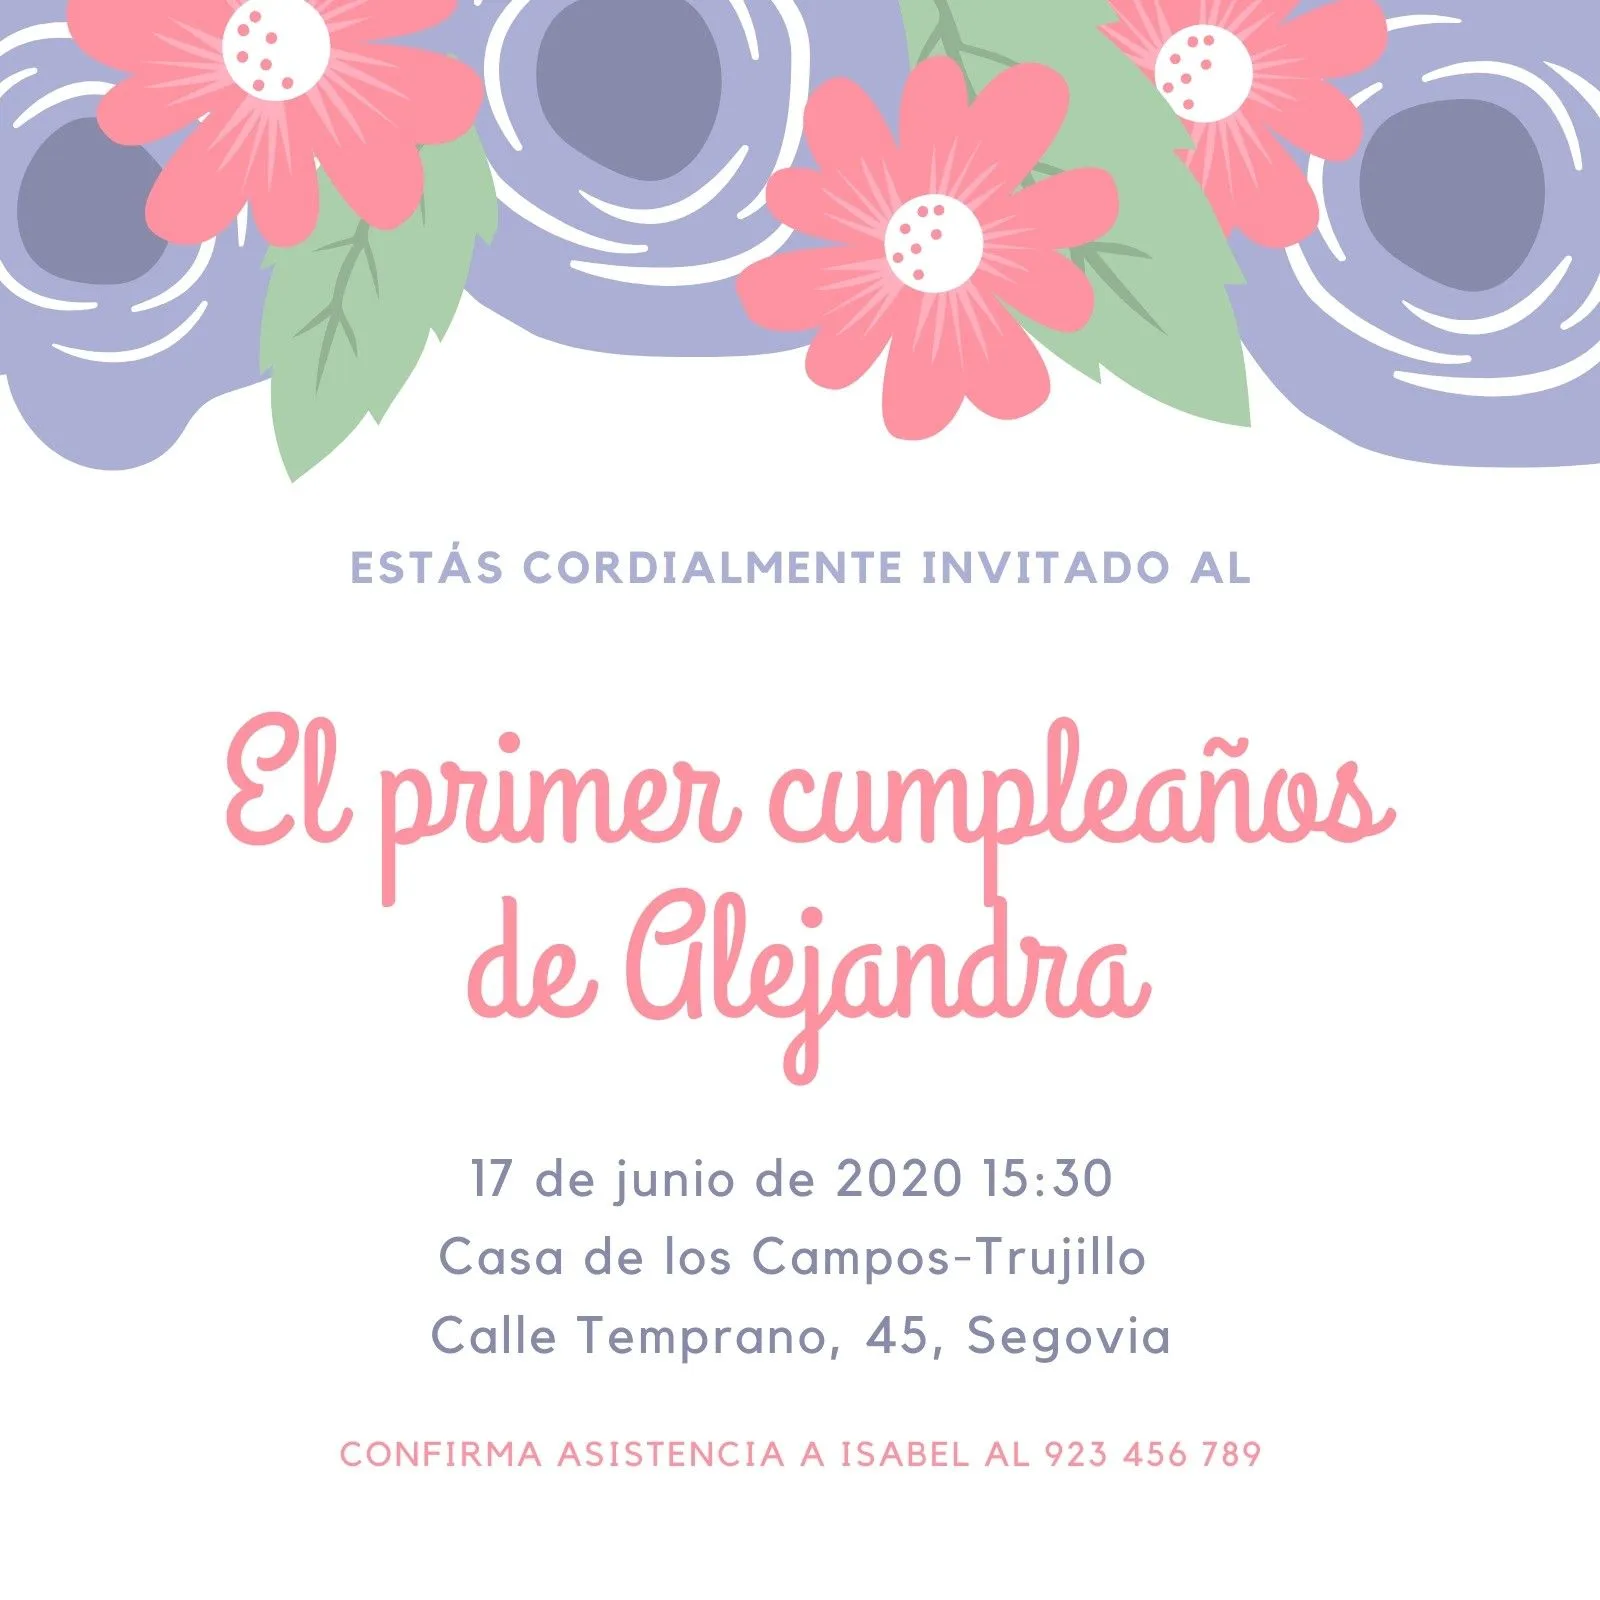 Plantillas de invitaciones a primer cumpleaños | Canva